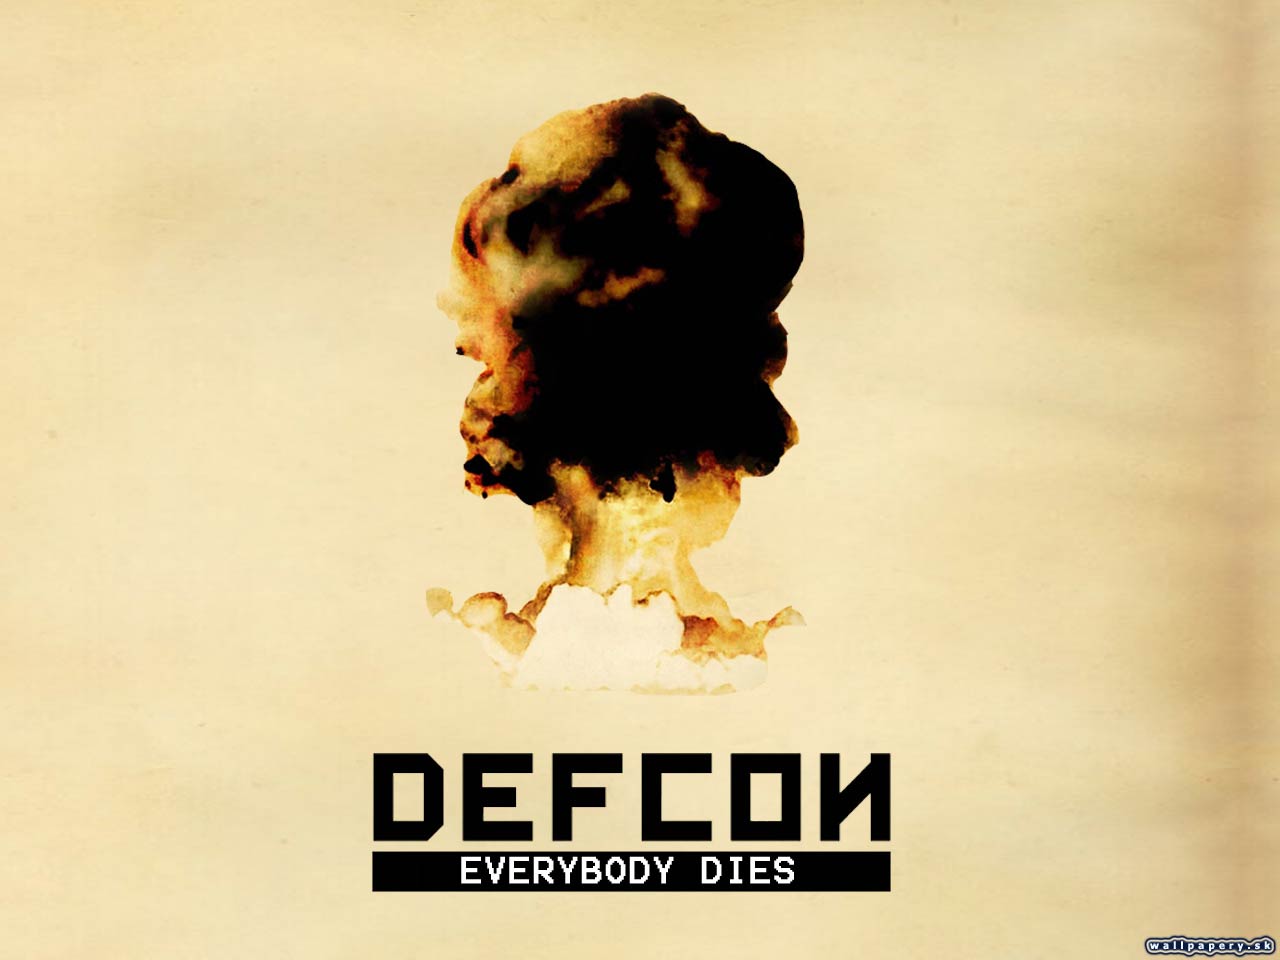 Defcon - Everybody dies - wallpaper 3